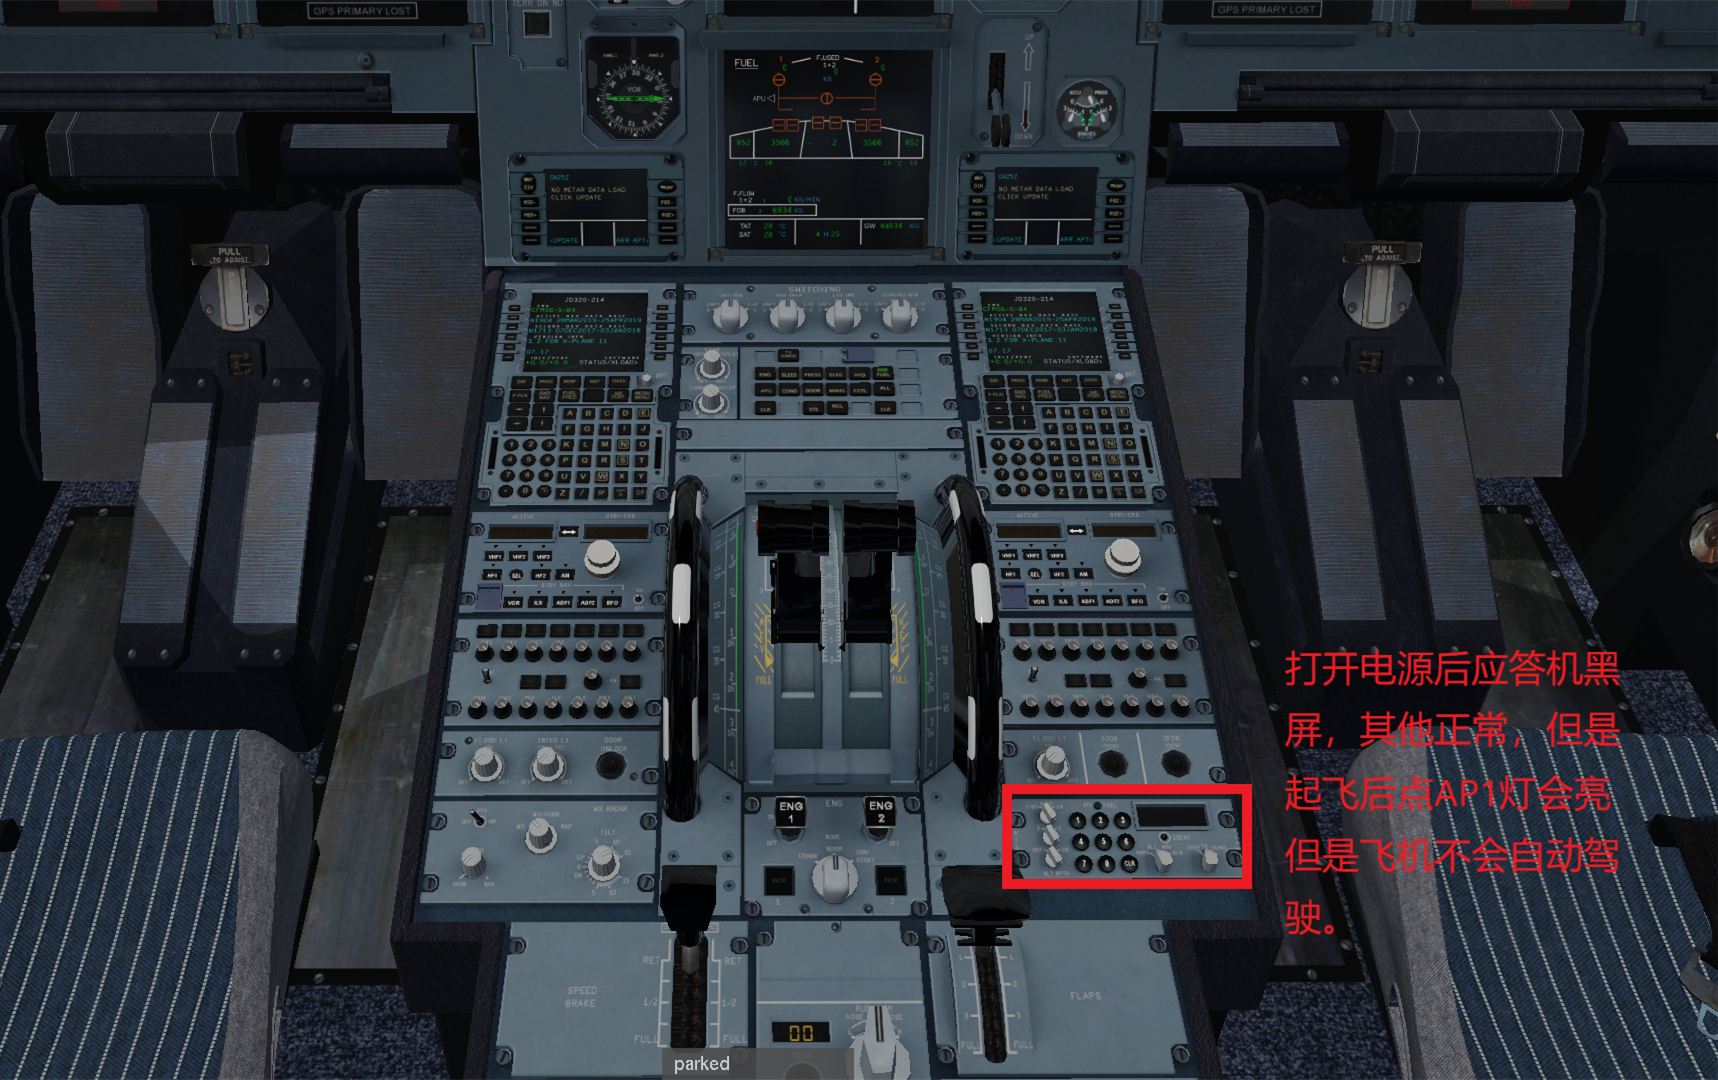 JARD A320  不能导航应答机黑屏的解决办法-7543 